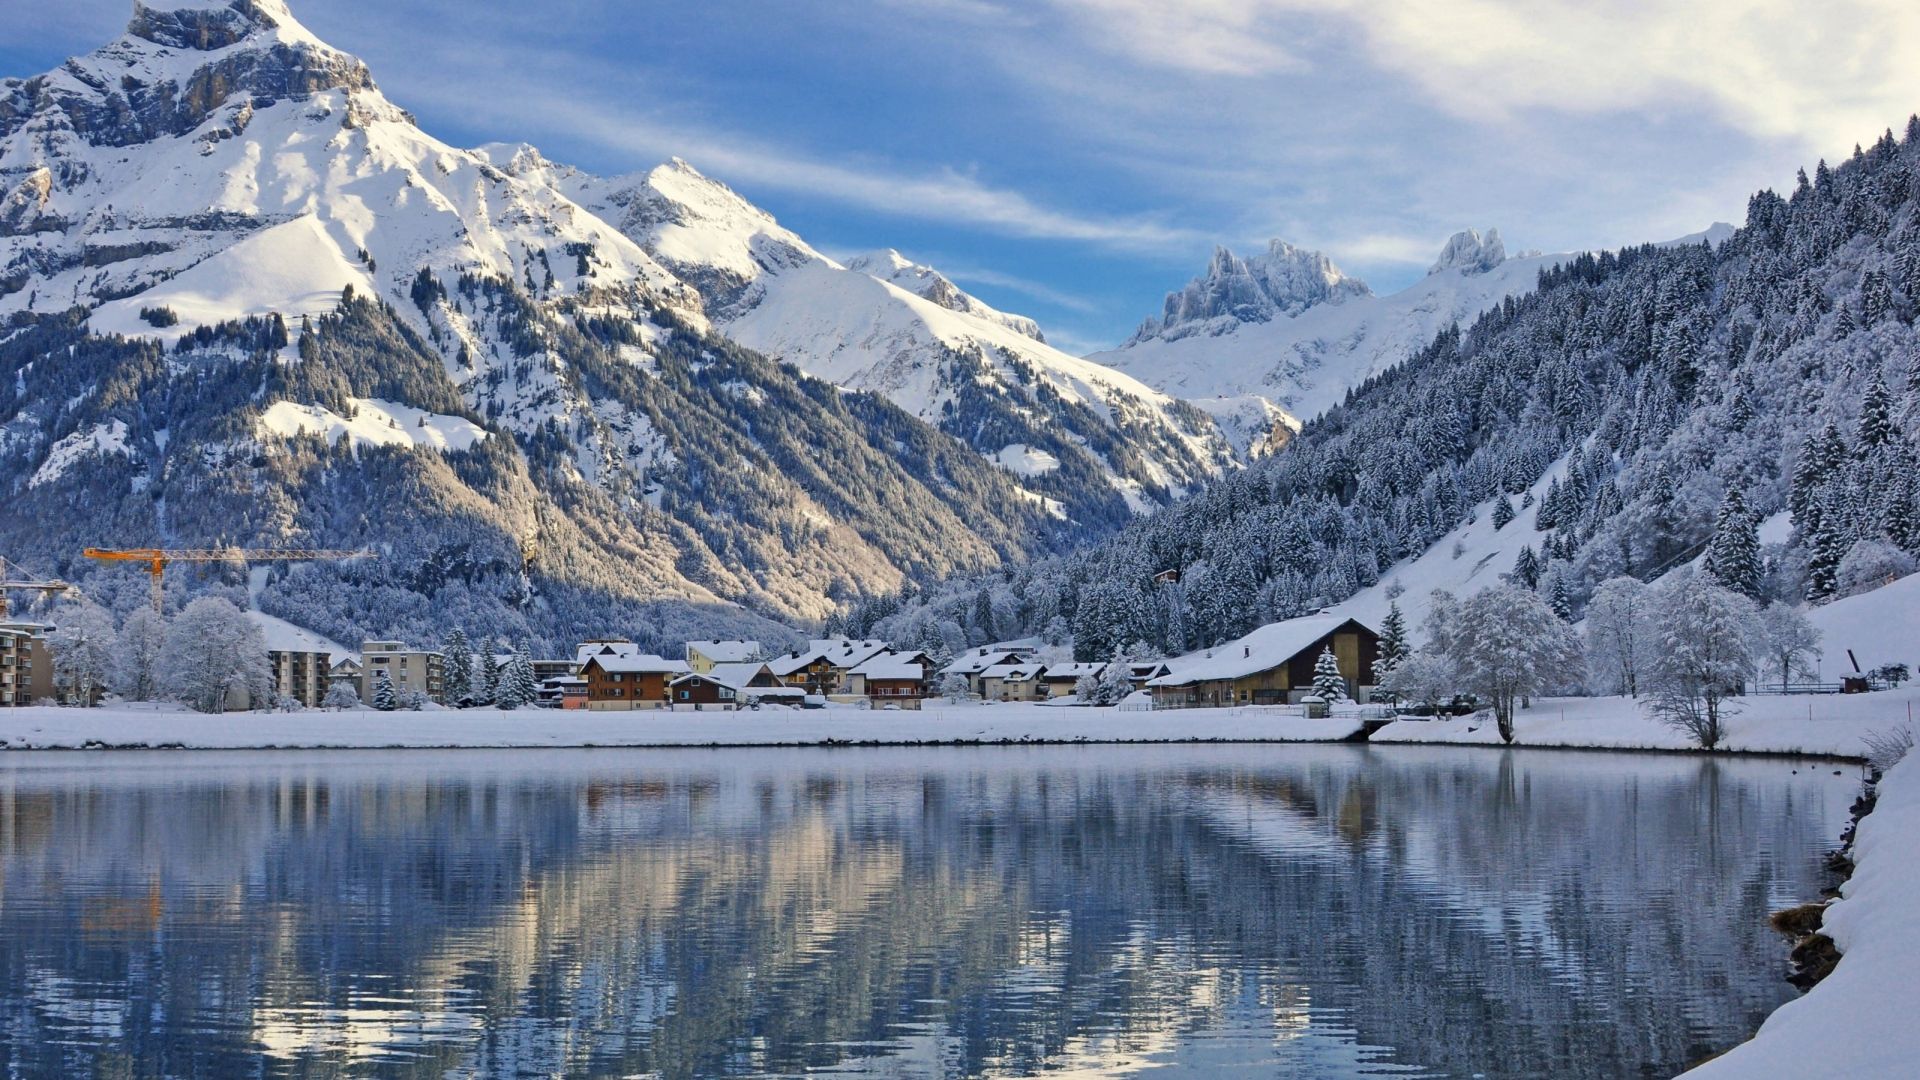  Schweiz Hintergrundbild 1920x1080. Herunterladen 1920x1080 Full HD Hintergrundbilder schweiz landschaft winter see berge engelberg 1080p